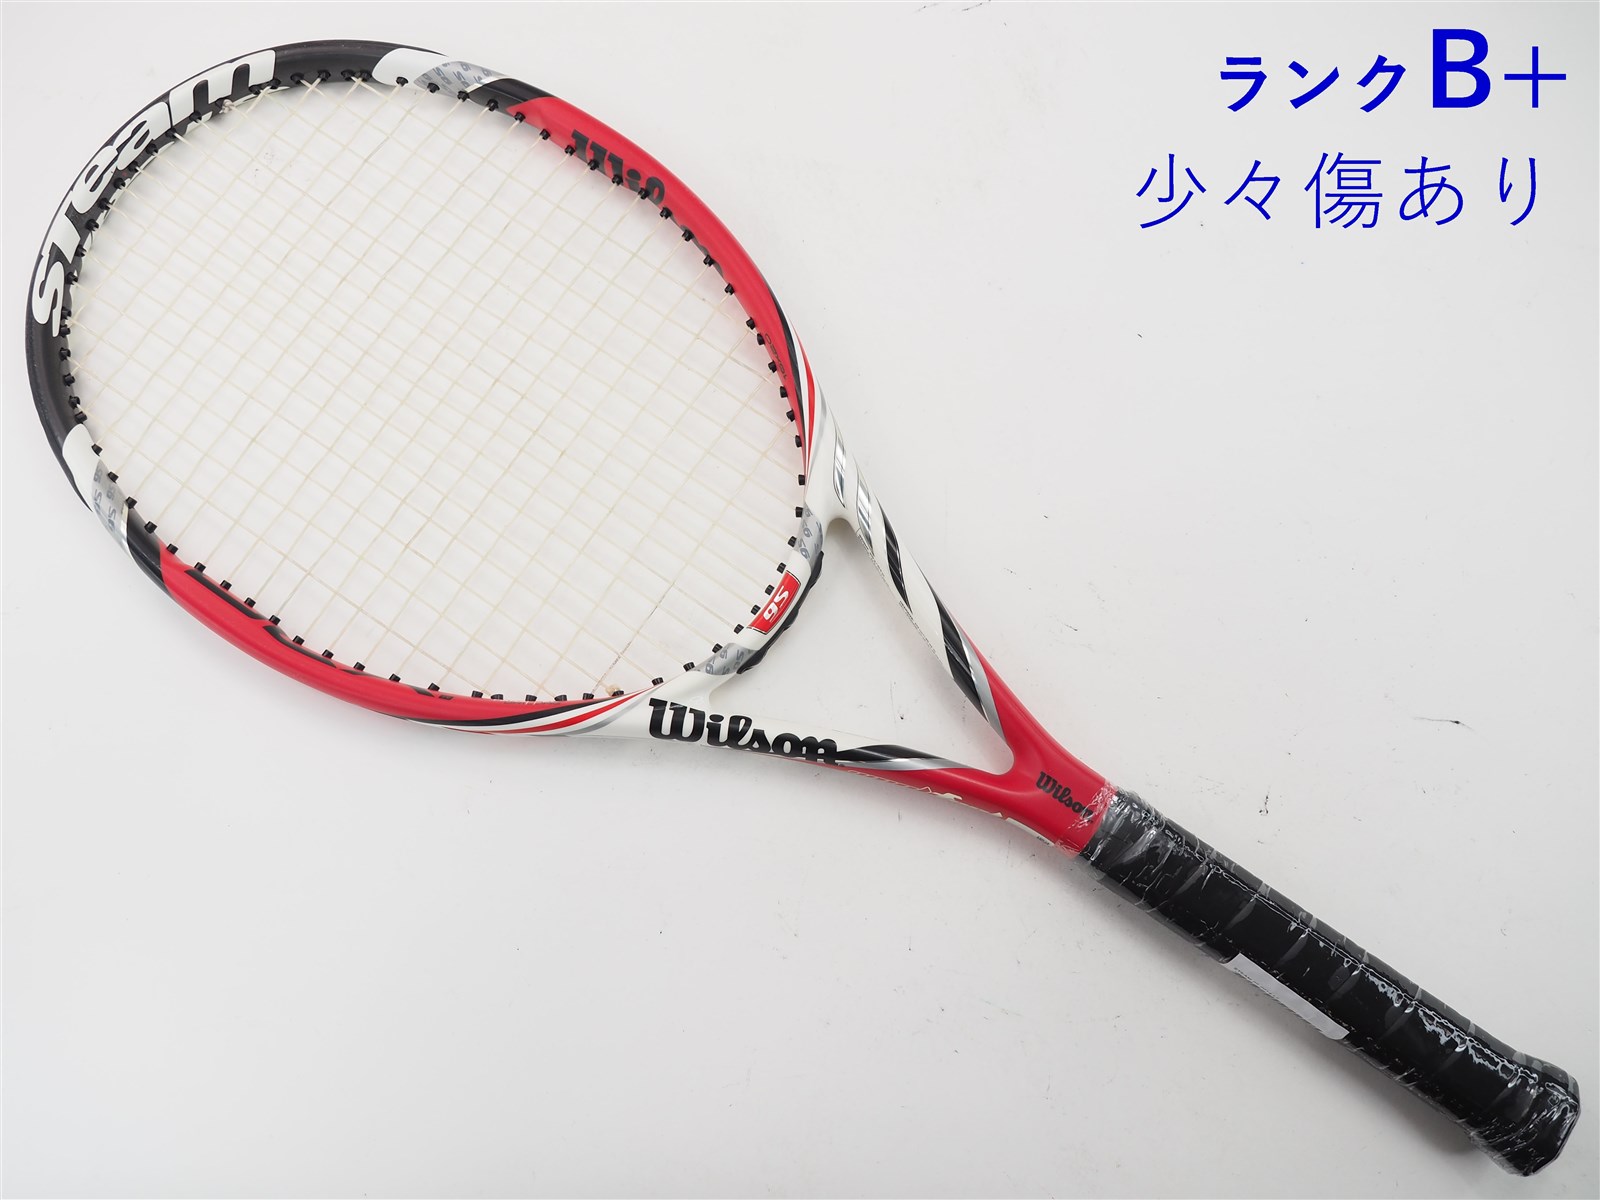 テニスラケット ウィルソン スティーム100 2014年モデル (G2)WILSON STEAM 100 2014100平方インチ長さ